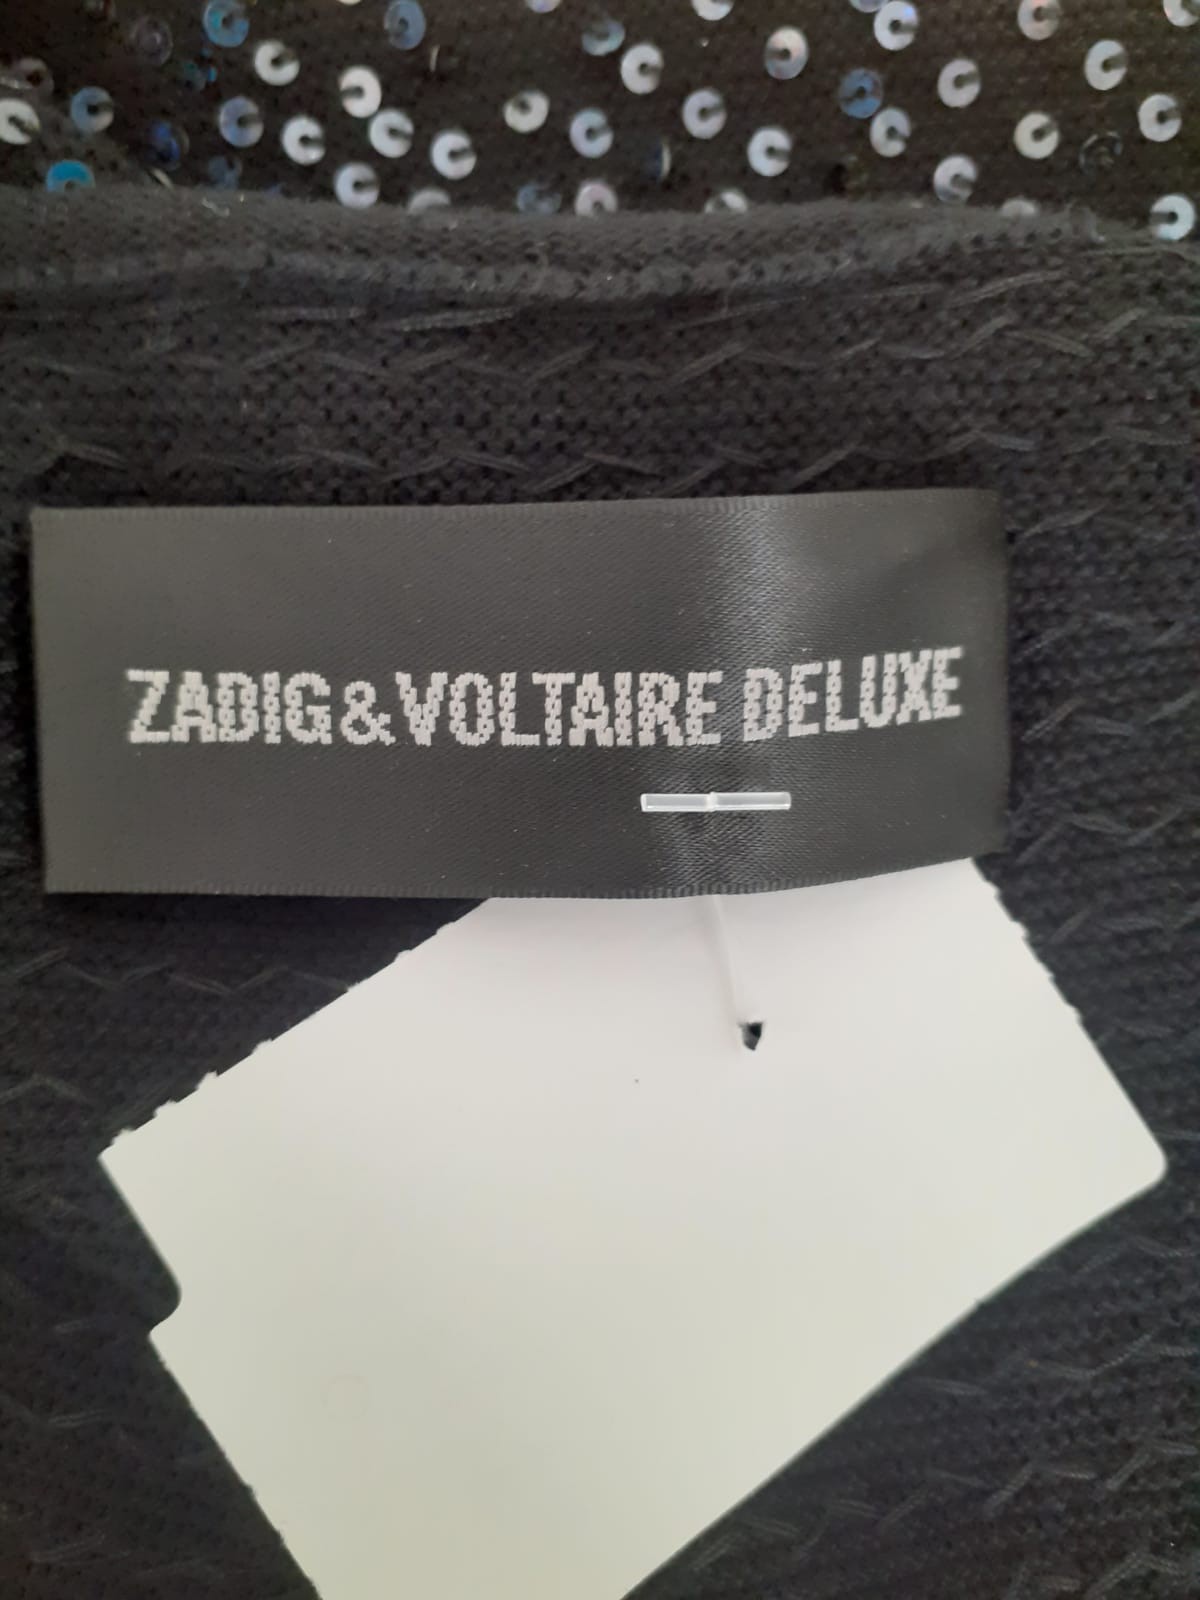 Blusa " Zadig & Voltaire Deluxe"